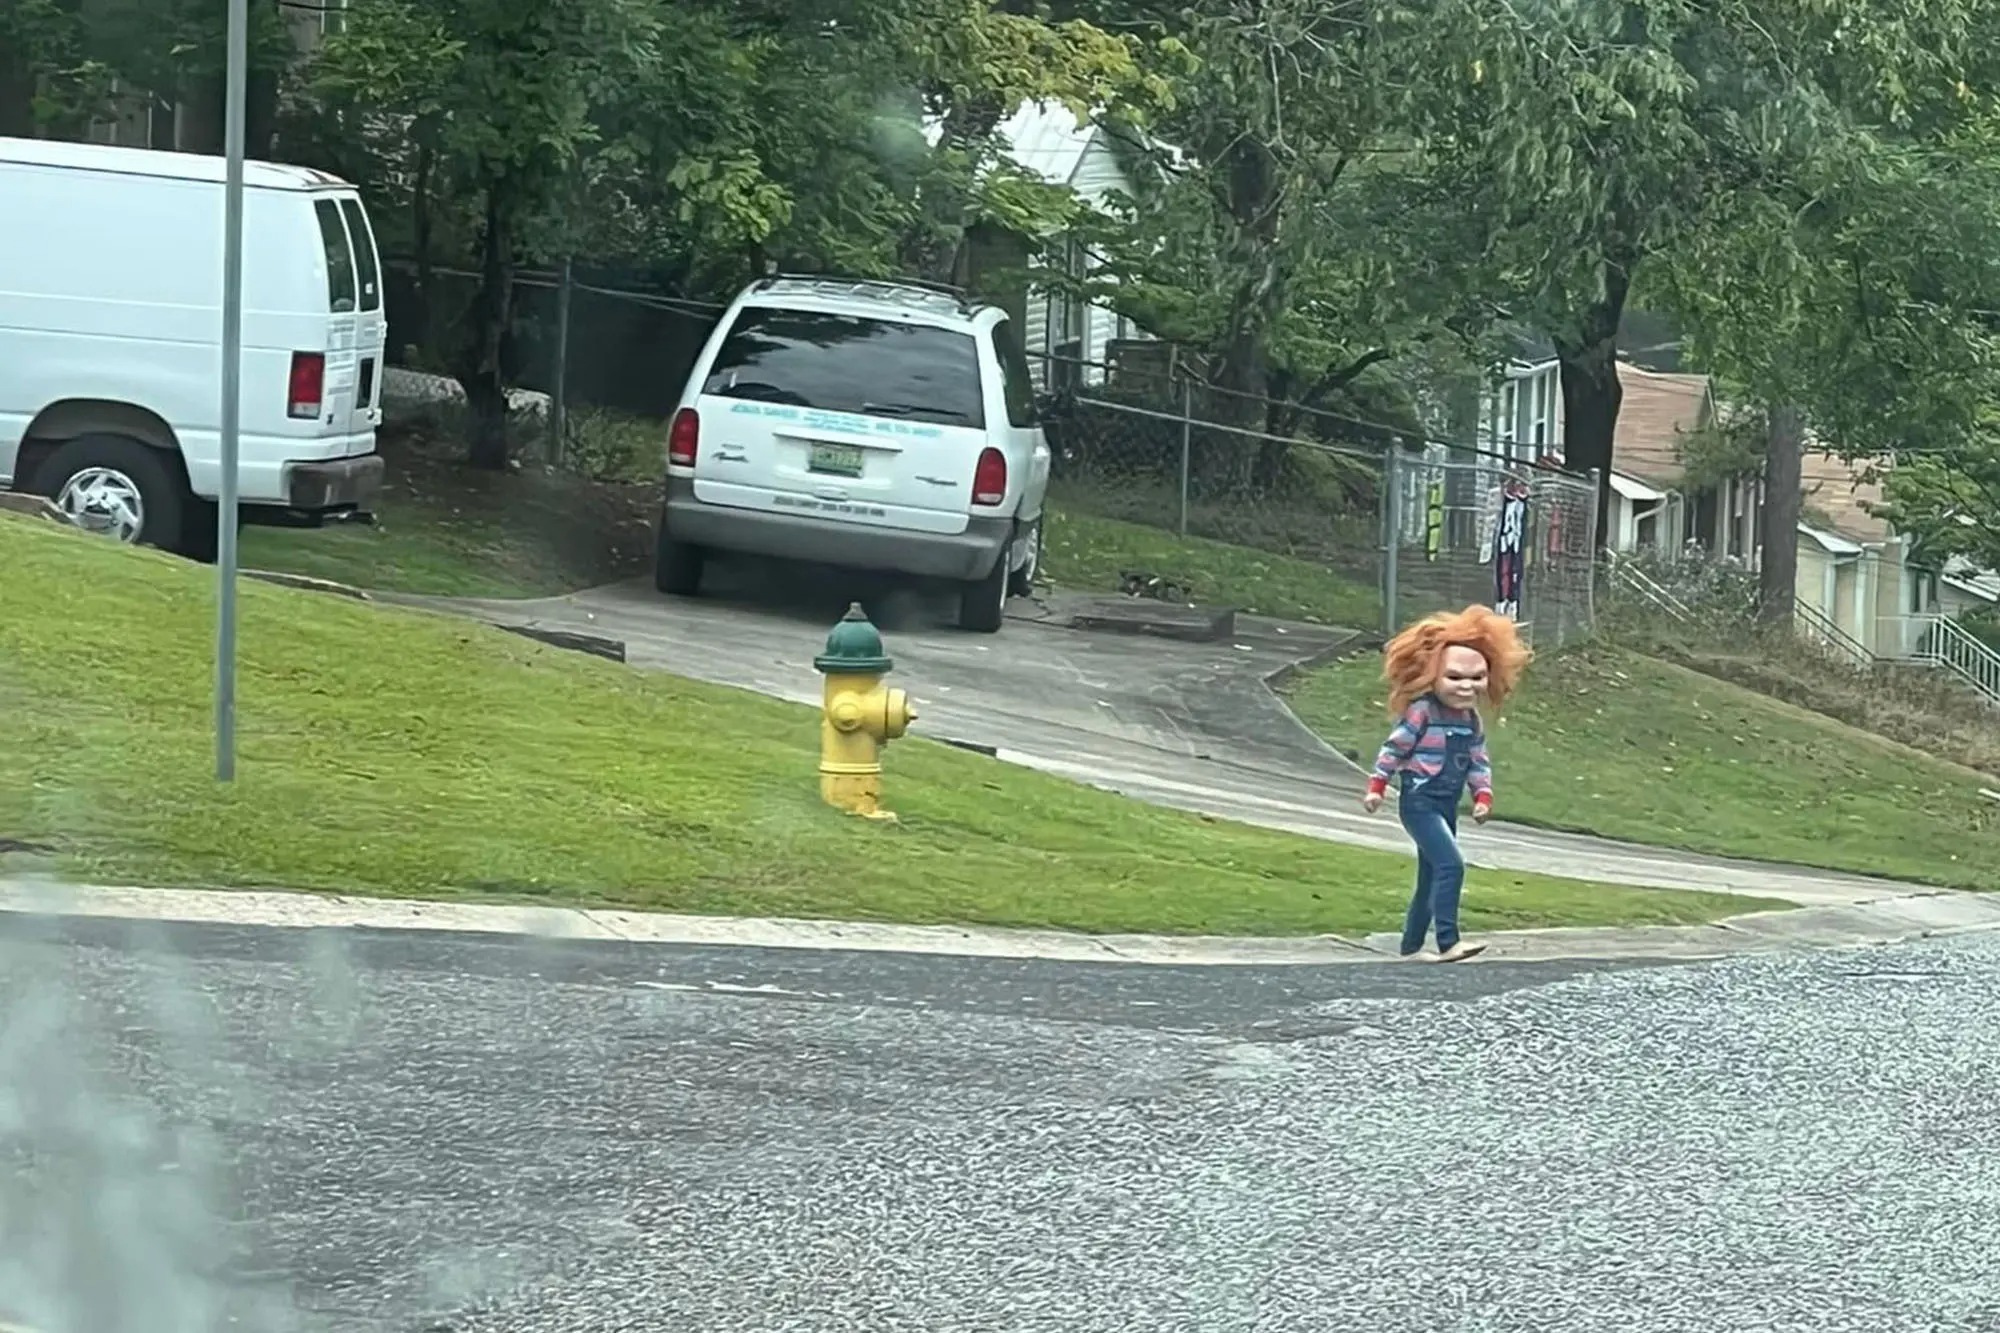 VIRAL: El “Chucky” de la vida real existe y deambula por las calles de Alabama causando pánico a sus residentes